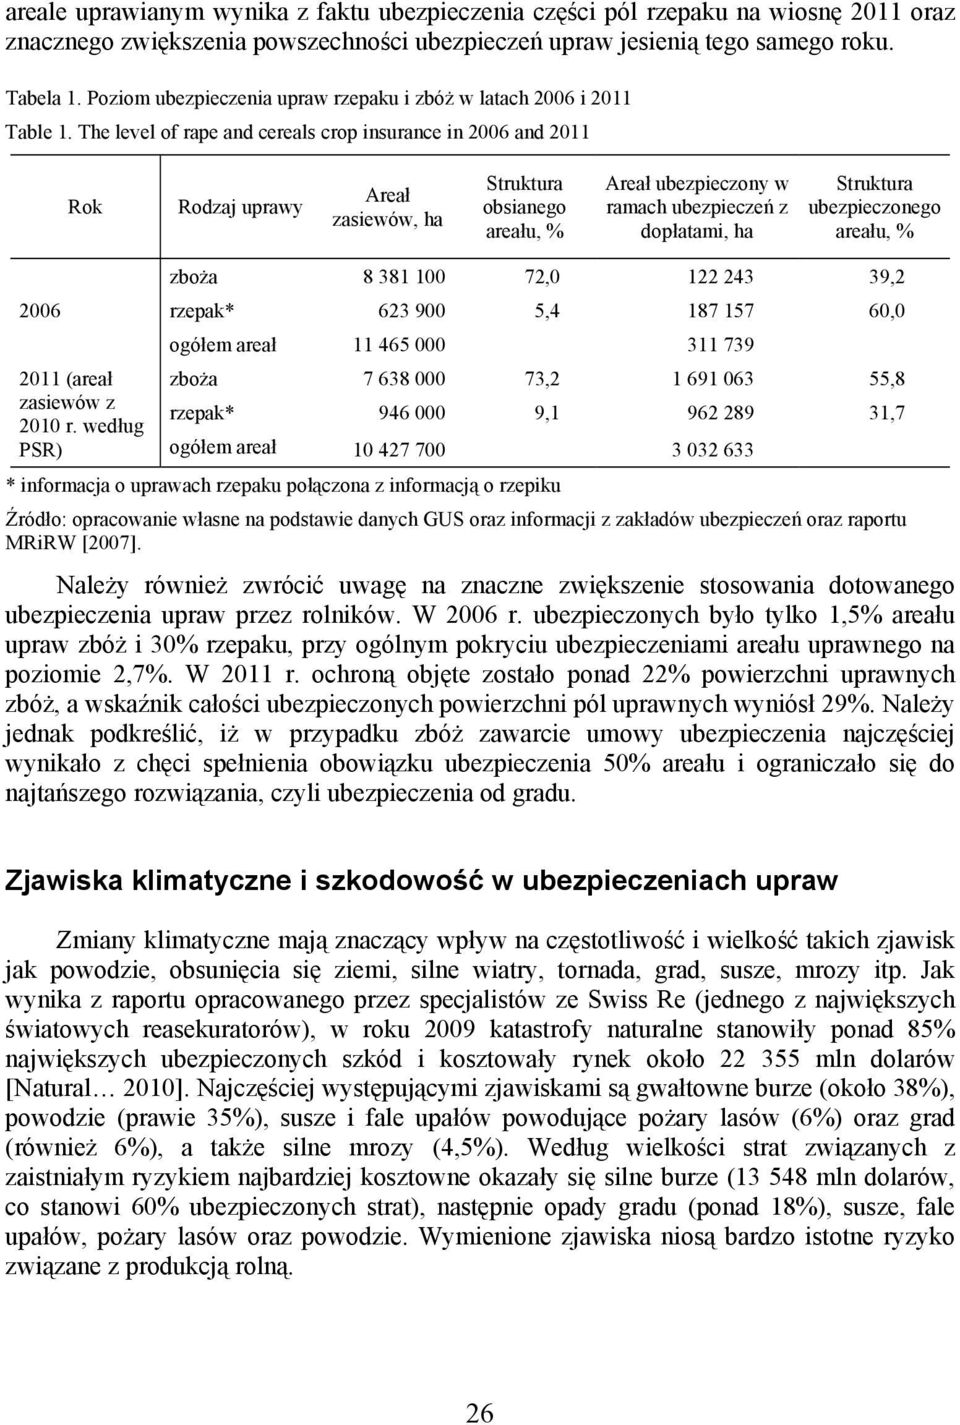 The level of rape and cereals crop insurance in 2006 and 2011 Rok Rodzaj uprawy Areał zasiewów, ha Struktura obsianego areału, % Areał ubezpieczony w ramach ubezpieczeń z dopłatami, ha Struktura